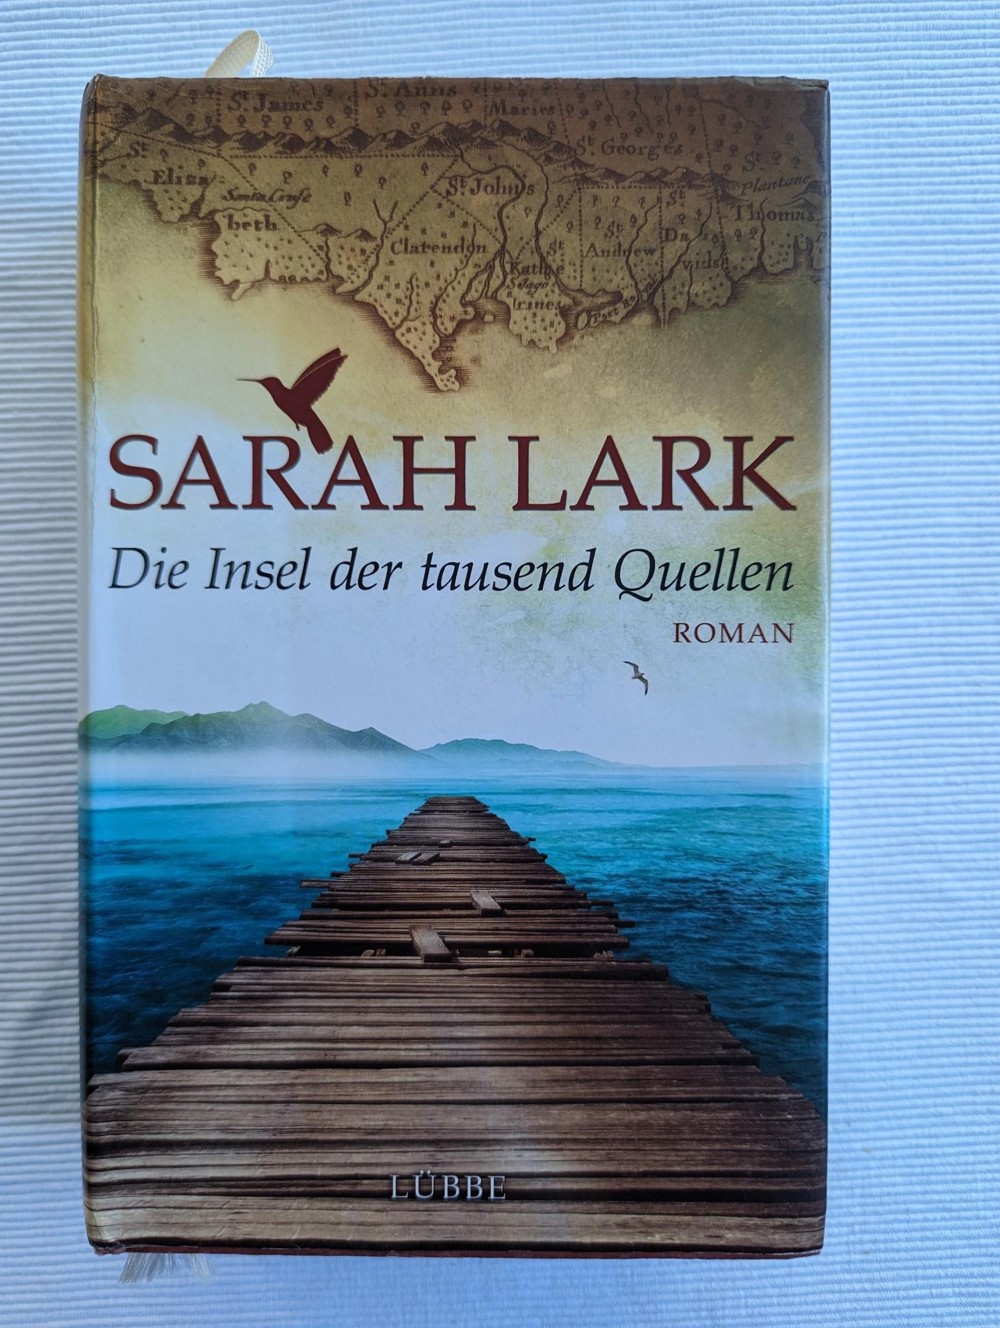 Die Insel der tausend Quellen - Sarah Lark - Hardcoverroman